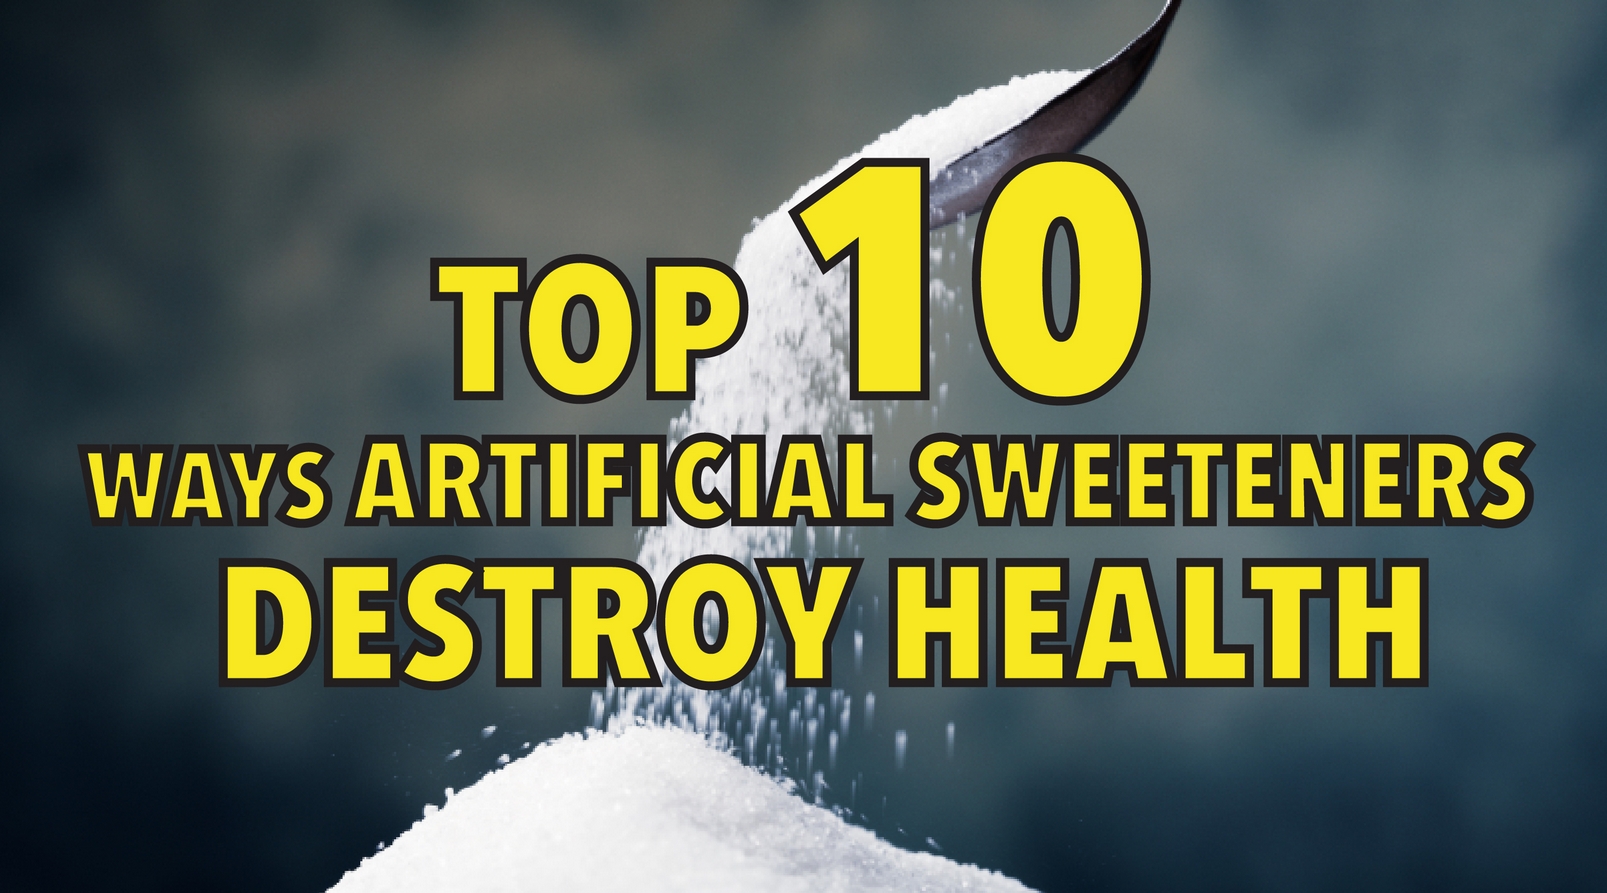 Top 10 ways artificial sweeteners destroy health